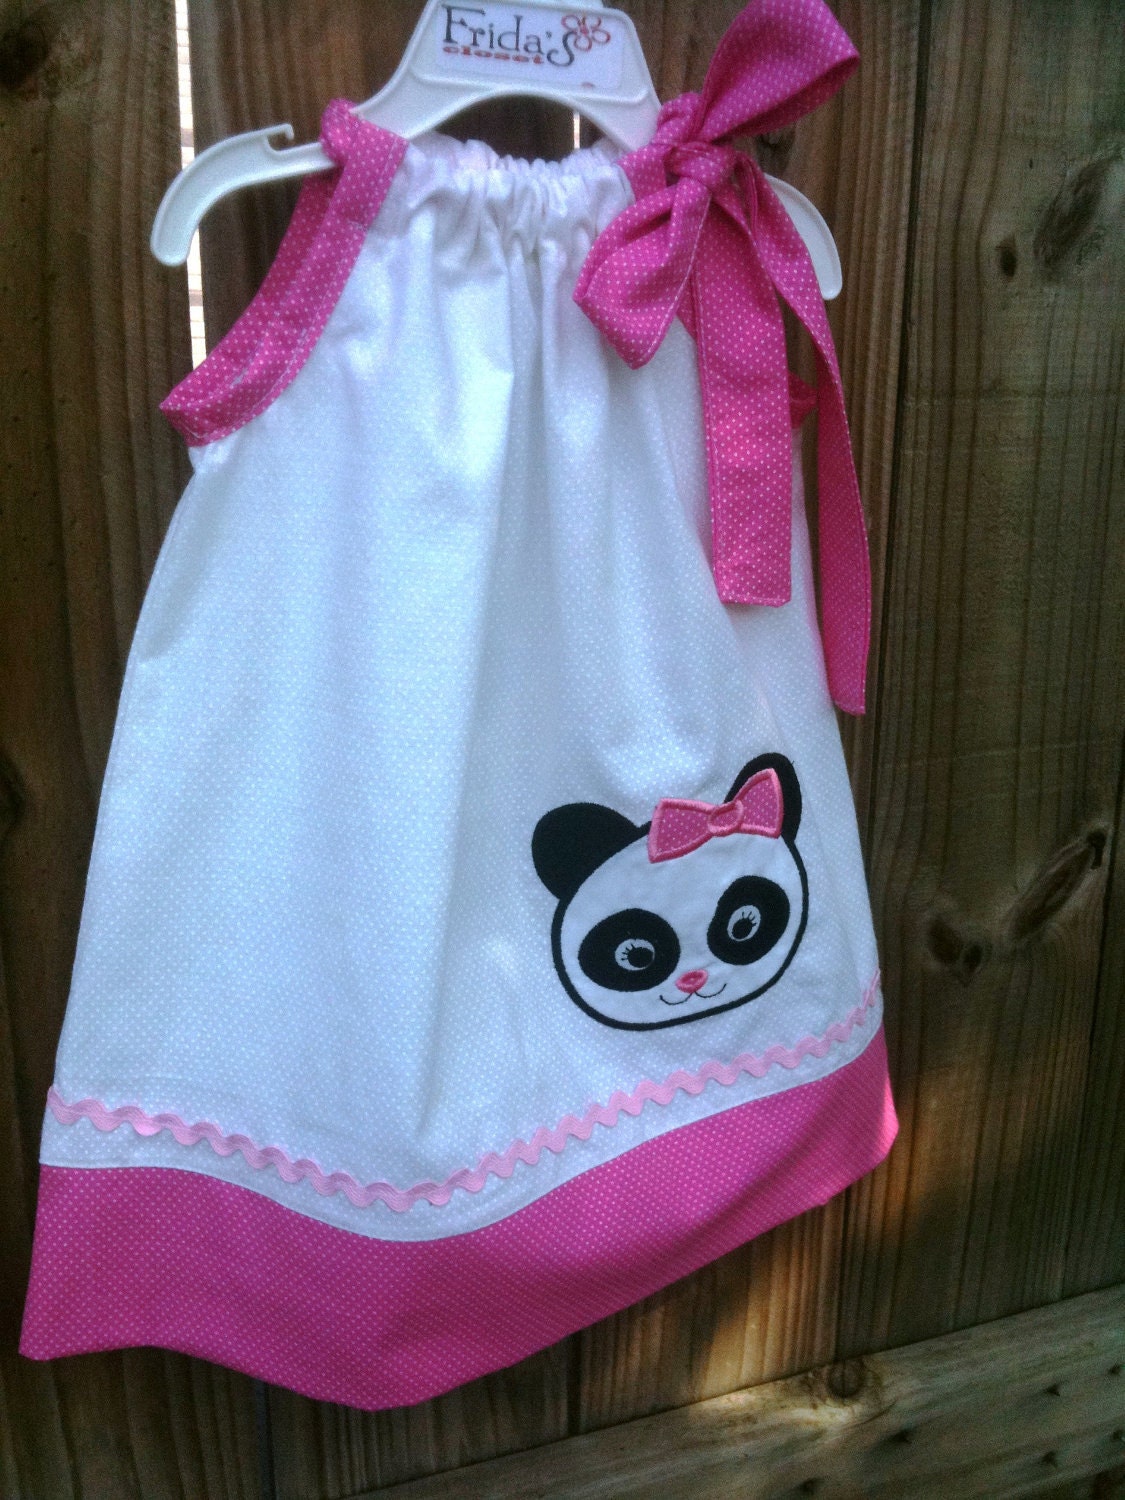 Super adorable pillowcase dress panda applique